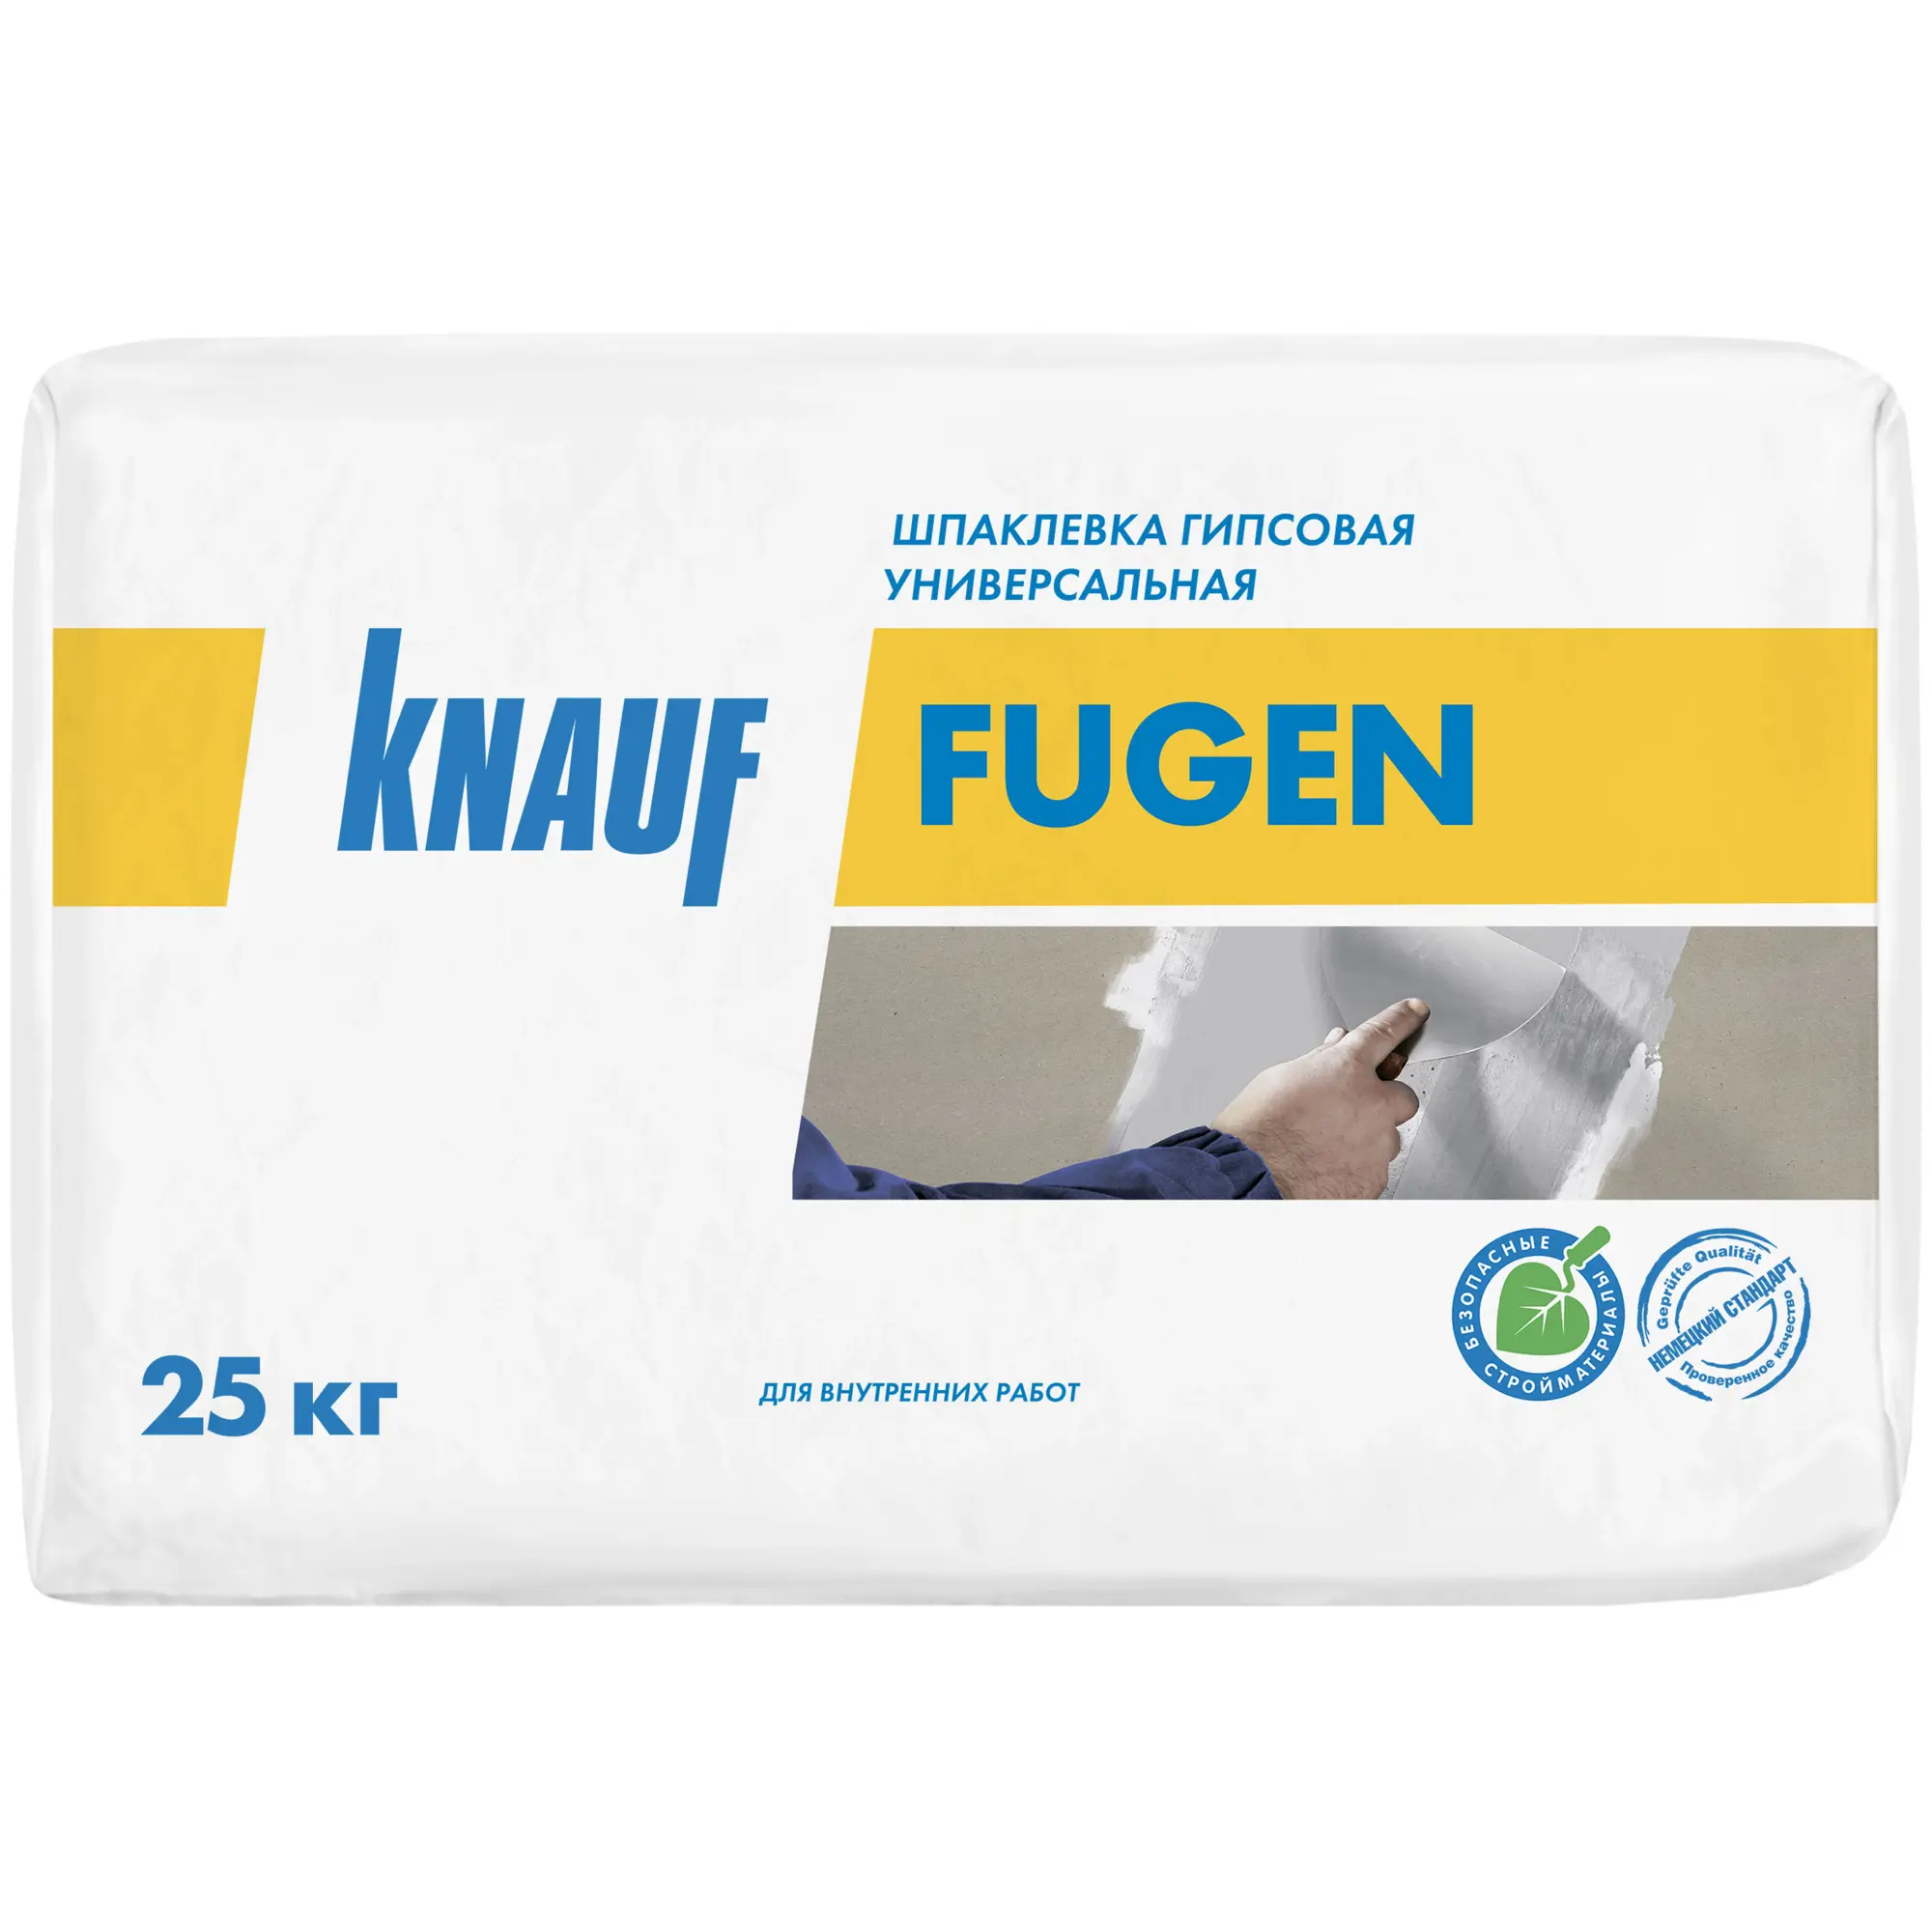 Шпатлевка гипсовая Knauf Fugen, 25кг